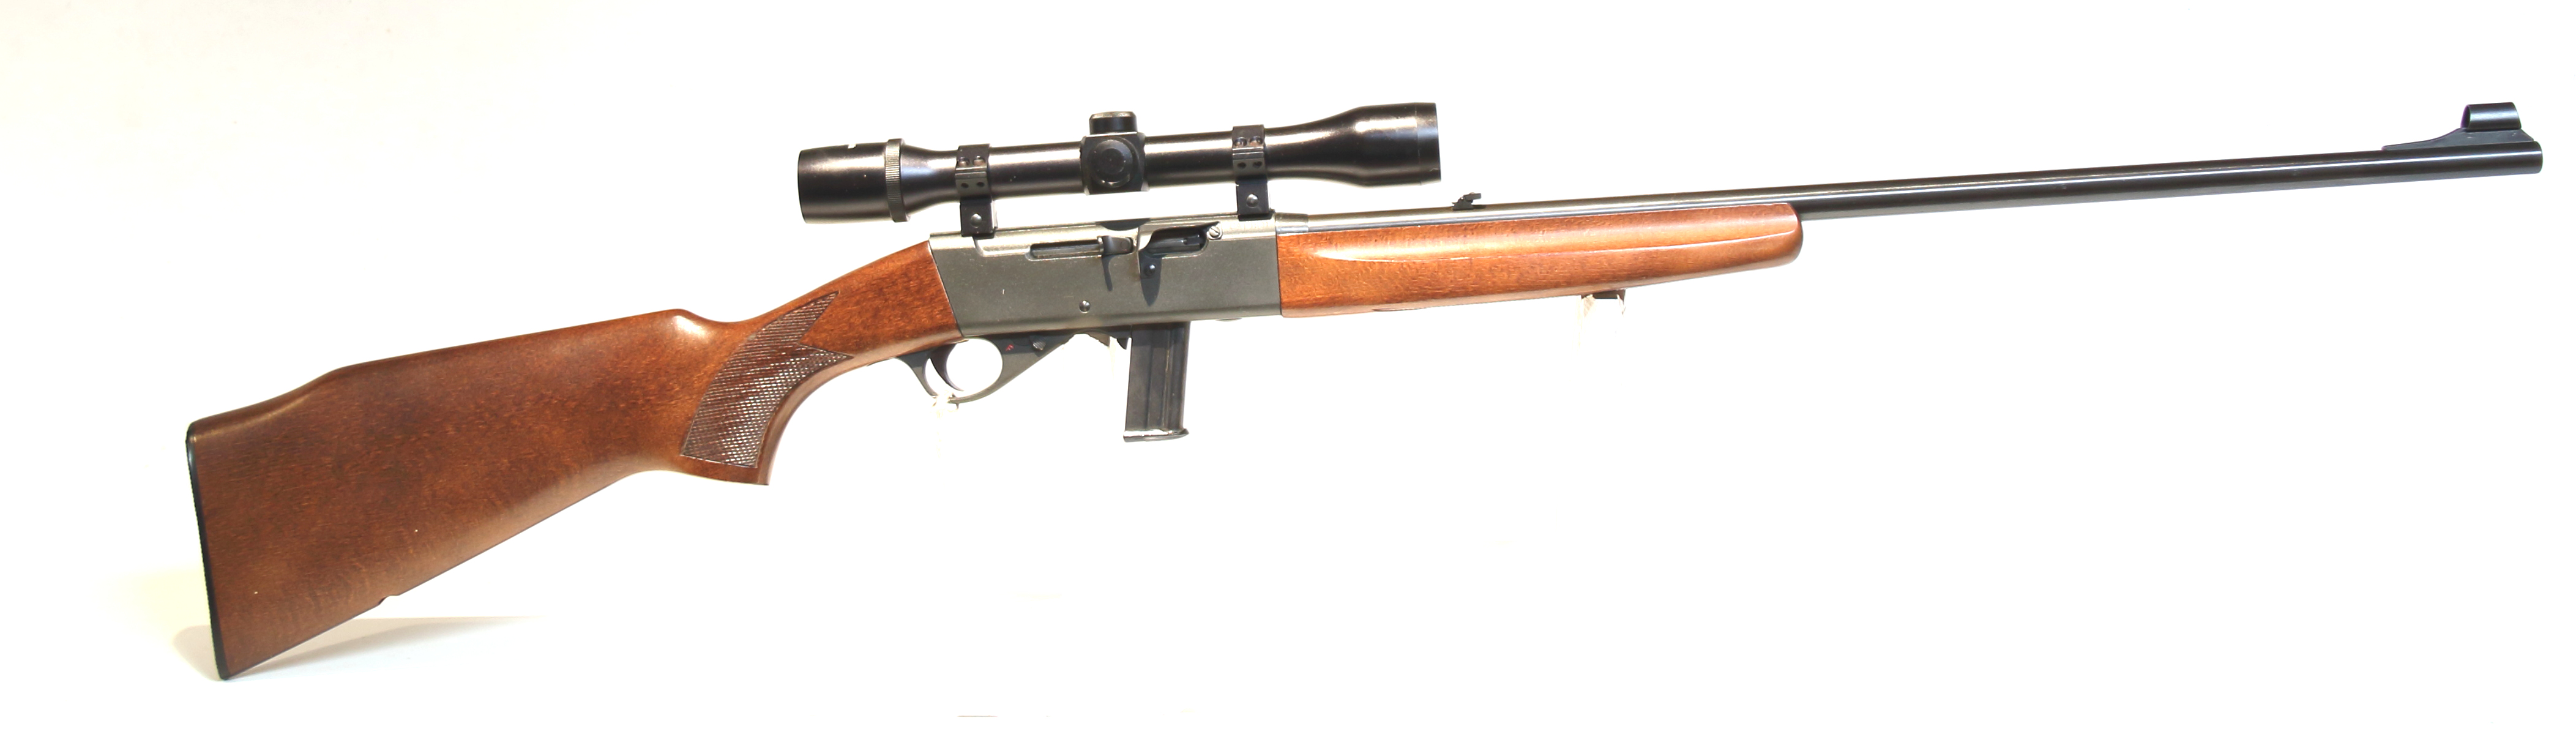 CARABINA SPORTIVA - MARCA ANSCHUTZ - MODELLO 520 - CALIBRO 22 Long Rifle 255